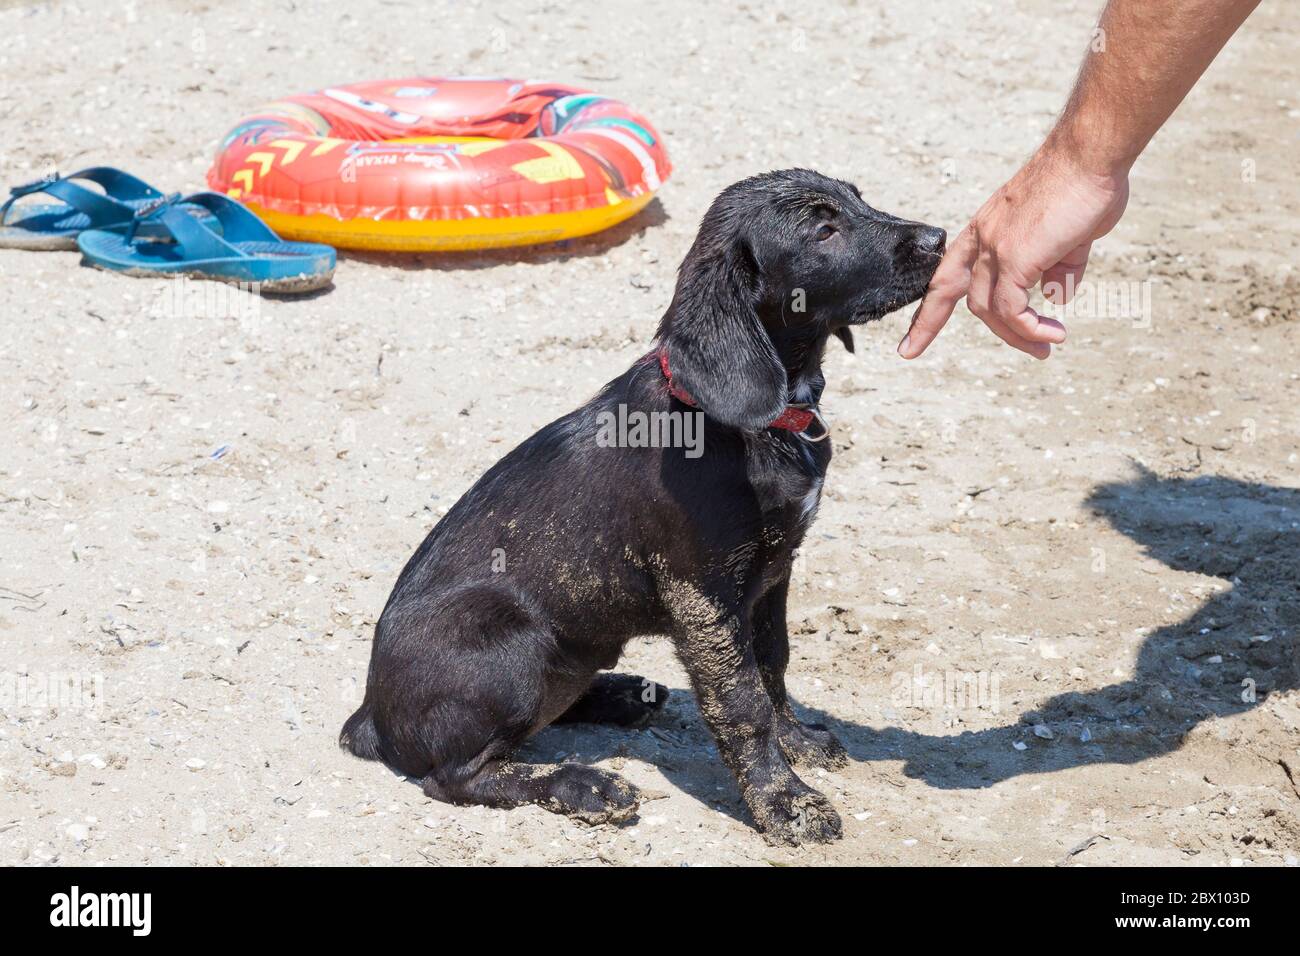 Strano uomo che si avvicina a un cucciolo nero sconosciuto su una spiaggia prima di poter sentire l'odore della sua mano che stabilisce il contatto prima di iniziare ad accarezzarlo Foto Stock